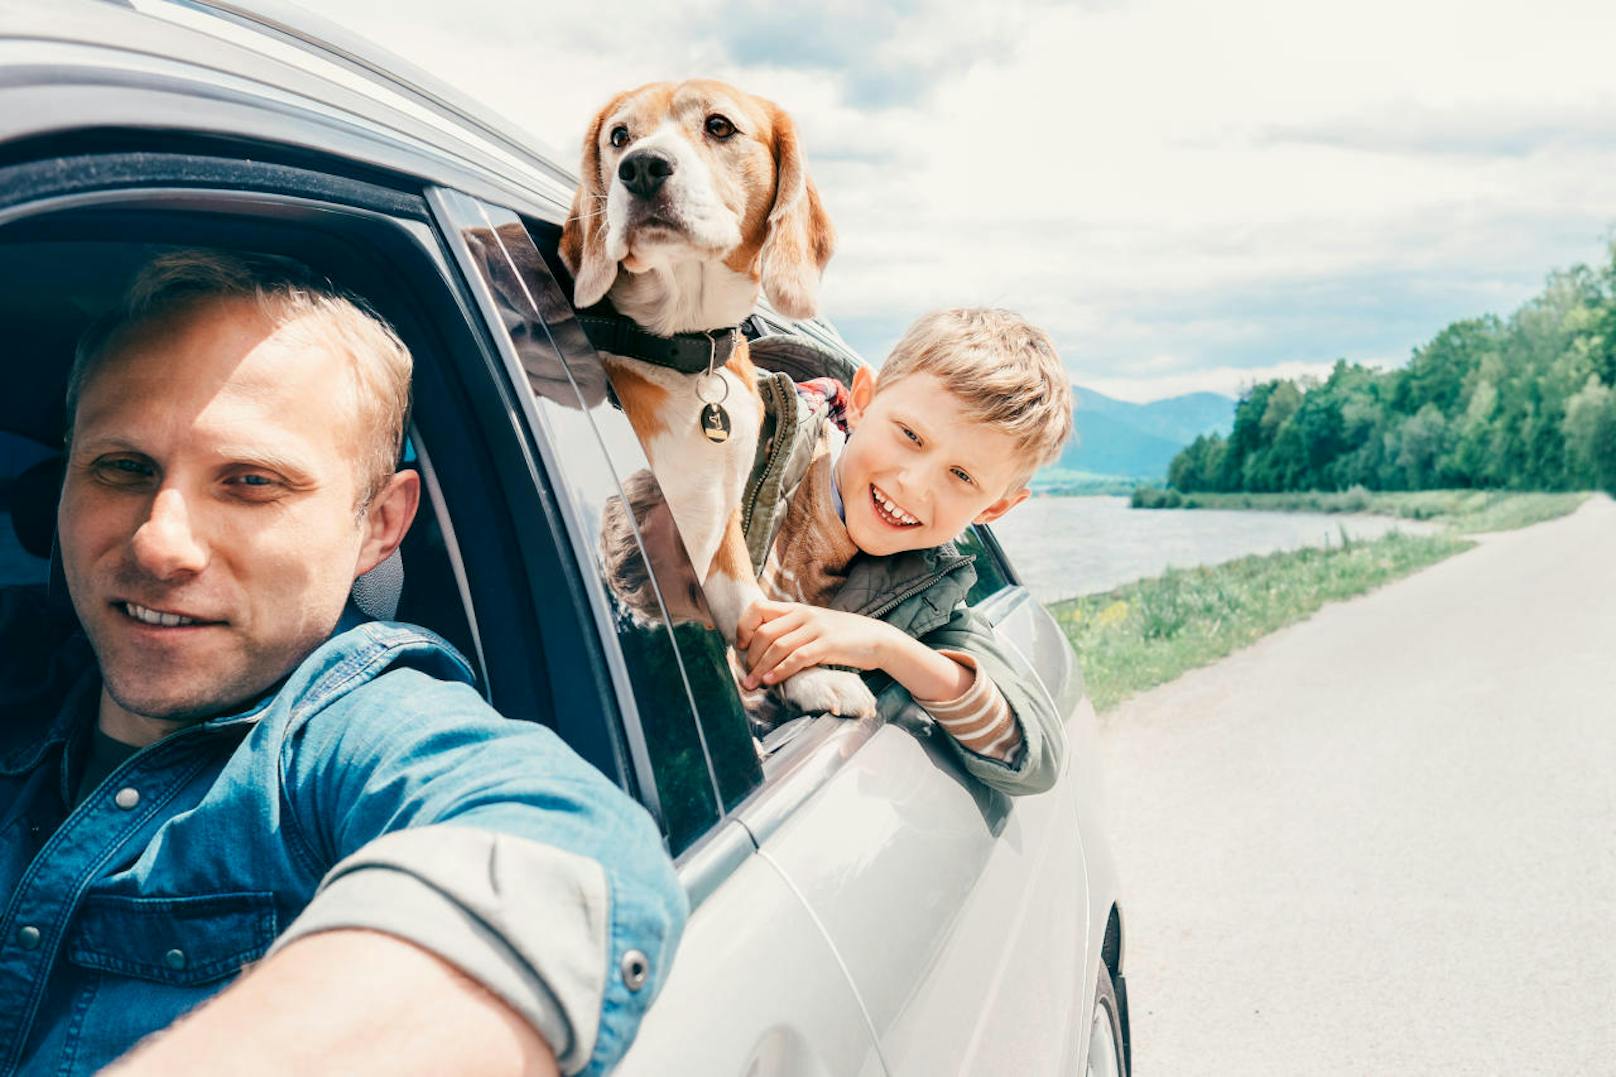 <b>Tipp 4: Transport im Auto</b>
Ihr Hund muss im Auto vorschriftsmäßig gesichert sein, denn ansonsten ist der Vierbeiner gefährdet und kann auch für Sie zur Gefahr werden. Falls Ihr Urlaub mit dem Hund im Sommer stattfindet, spielt vor allem auch die Hitze im Wagen eine bedeutende Rolle. Große Hitze kann für den Hund richtig gefährlich werden. Die wichtigste Regel lautet daher: Lassen Sie Ihren Hund im Sommer nie allein im Auto zurück! Auch nicht, wenn Sie im Schatten geparkt haben. Achten Sie während einer langen Autofahrt auch darauf, dass der Hund genügend Wasser trinkt und Sie hin und wieder Pausen einlegen.